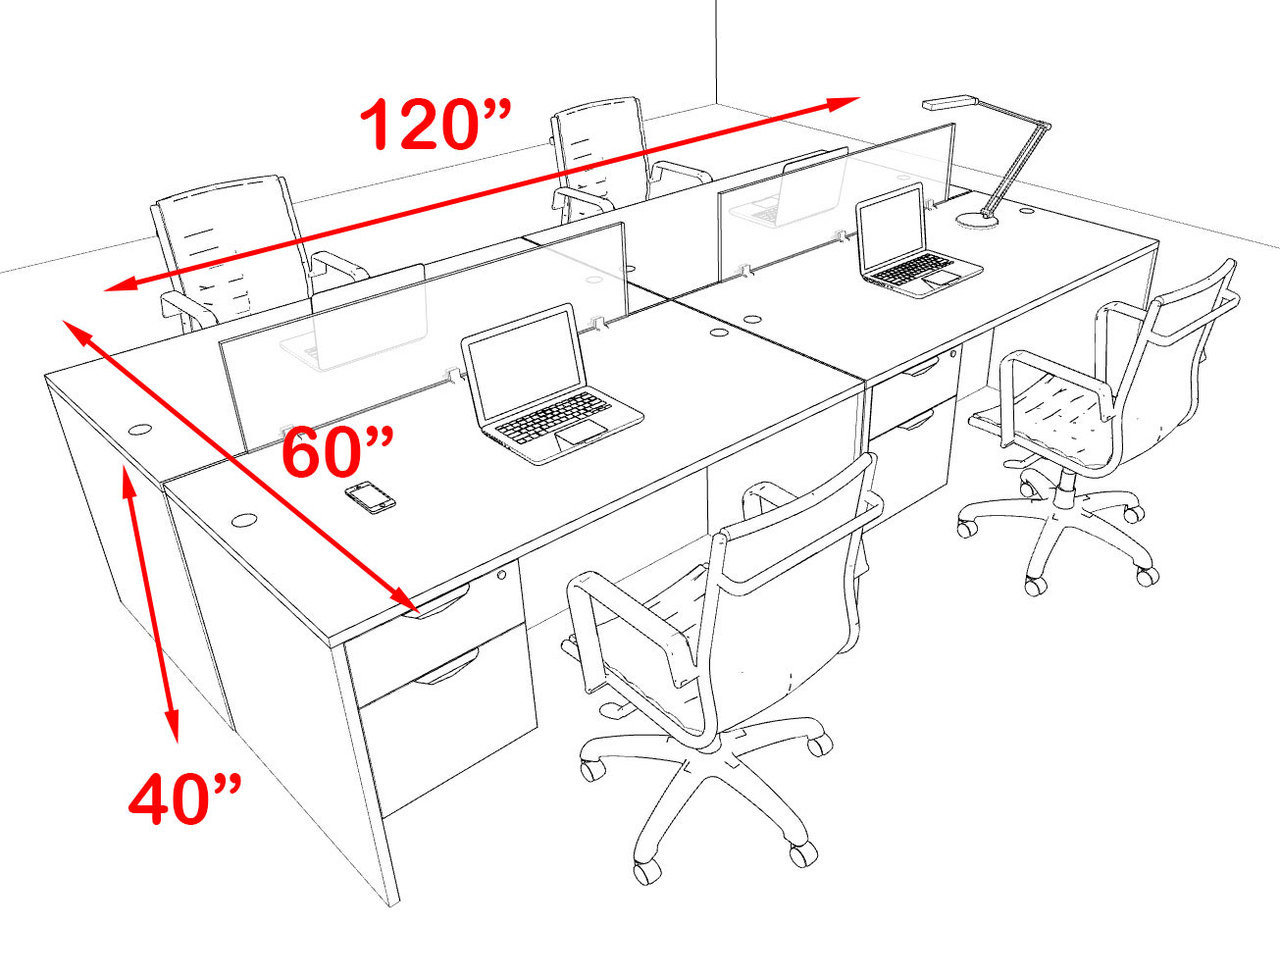 Four Person Modern Blue Divider Office Workstation Desk Set, #OT-SUL-FPB17